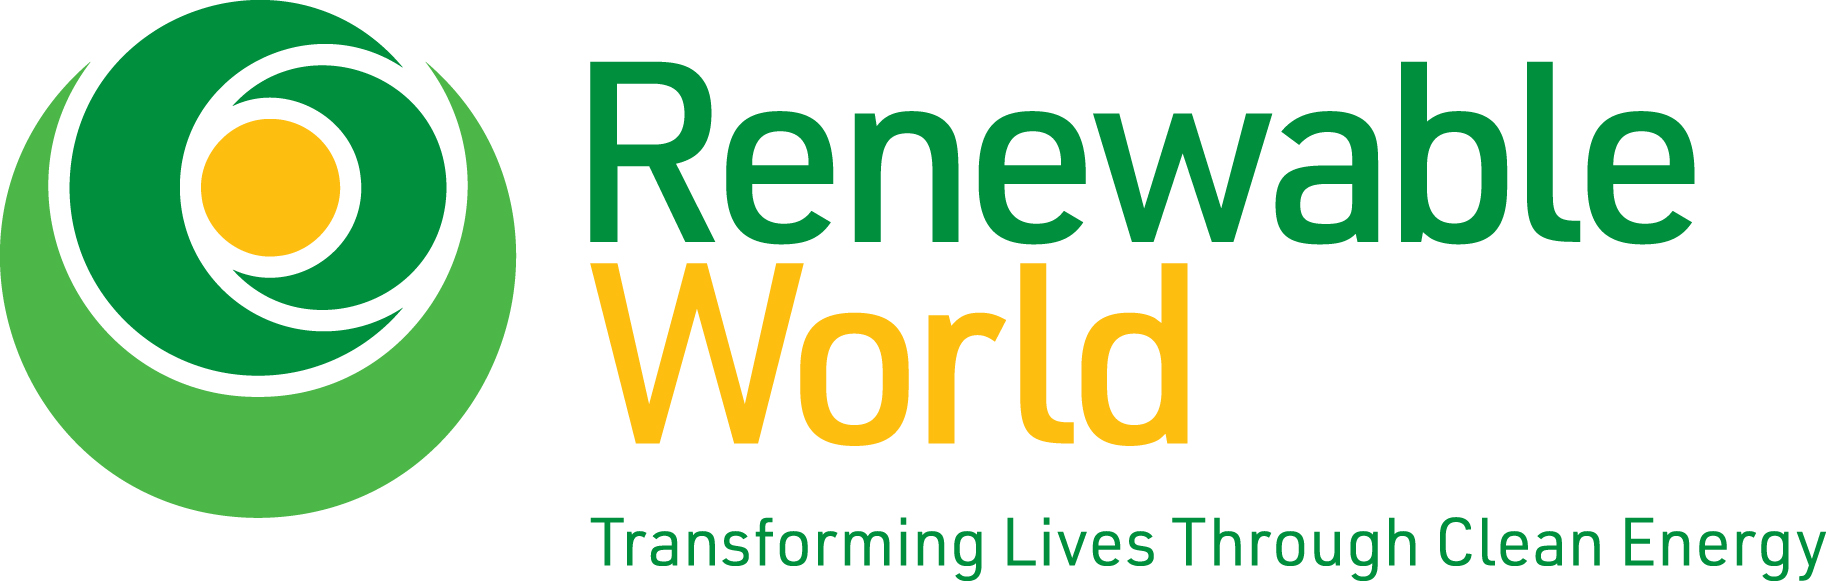 Renewable World